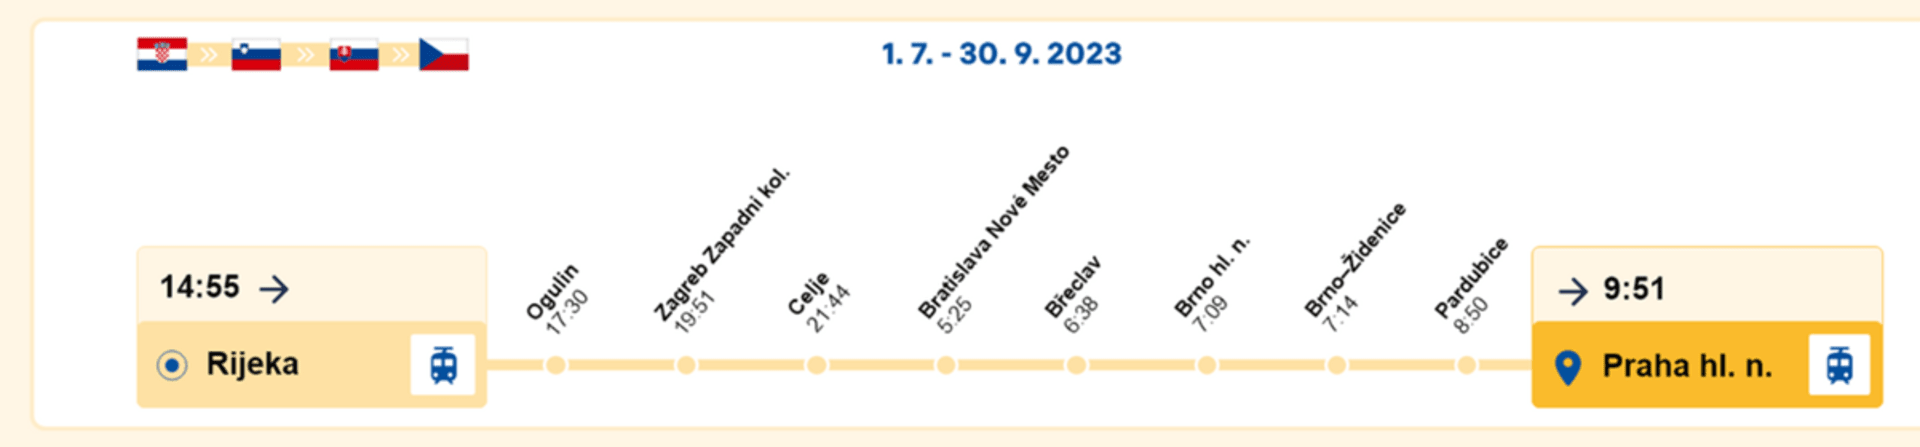 Vlakem do Chorvatska v roce 2023: Spoj RegioJetu do Prahy